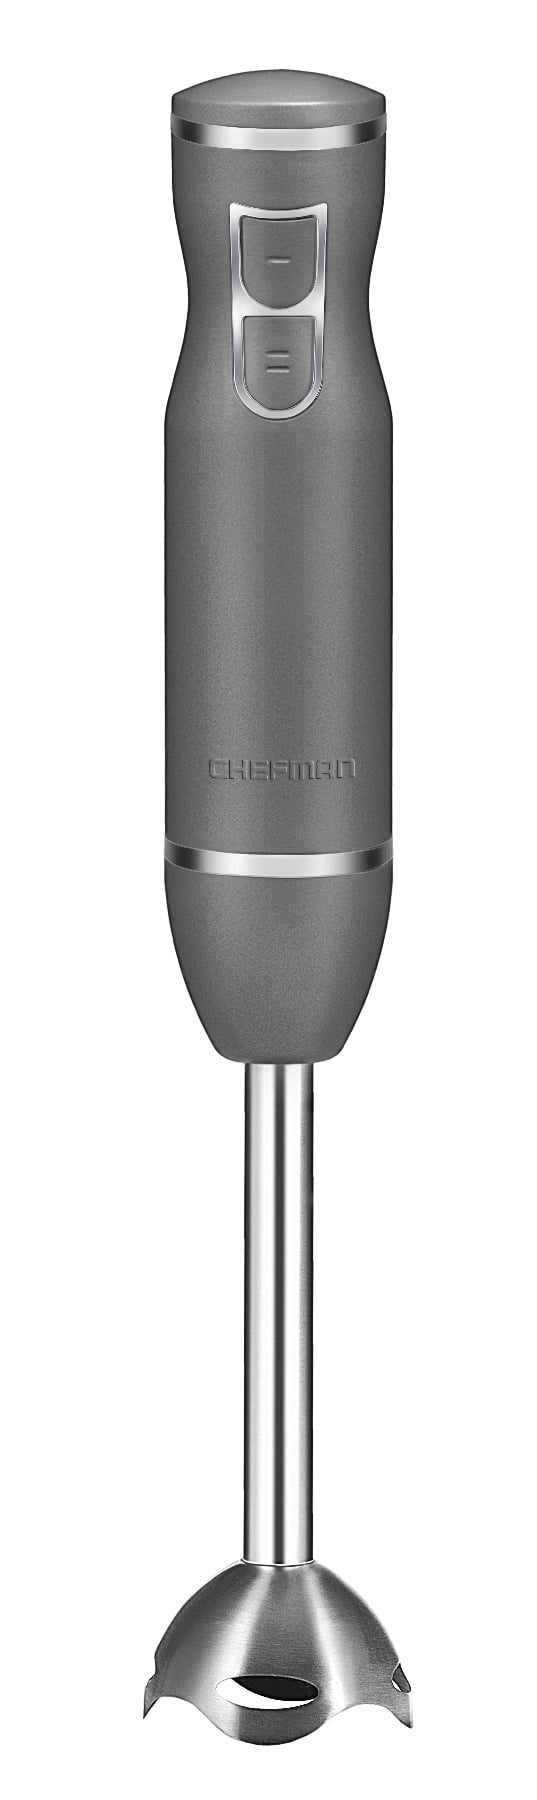 Chefman Immersion Stick 300 Watt Hand Blender - Ivory/Silver, 1 ct